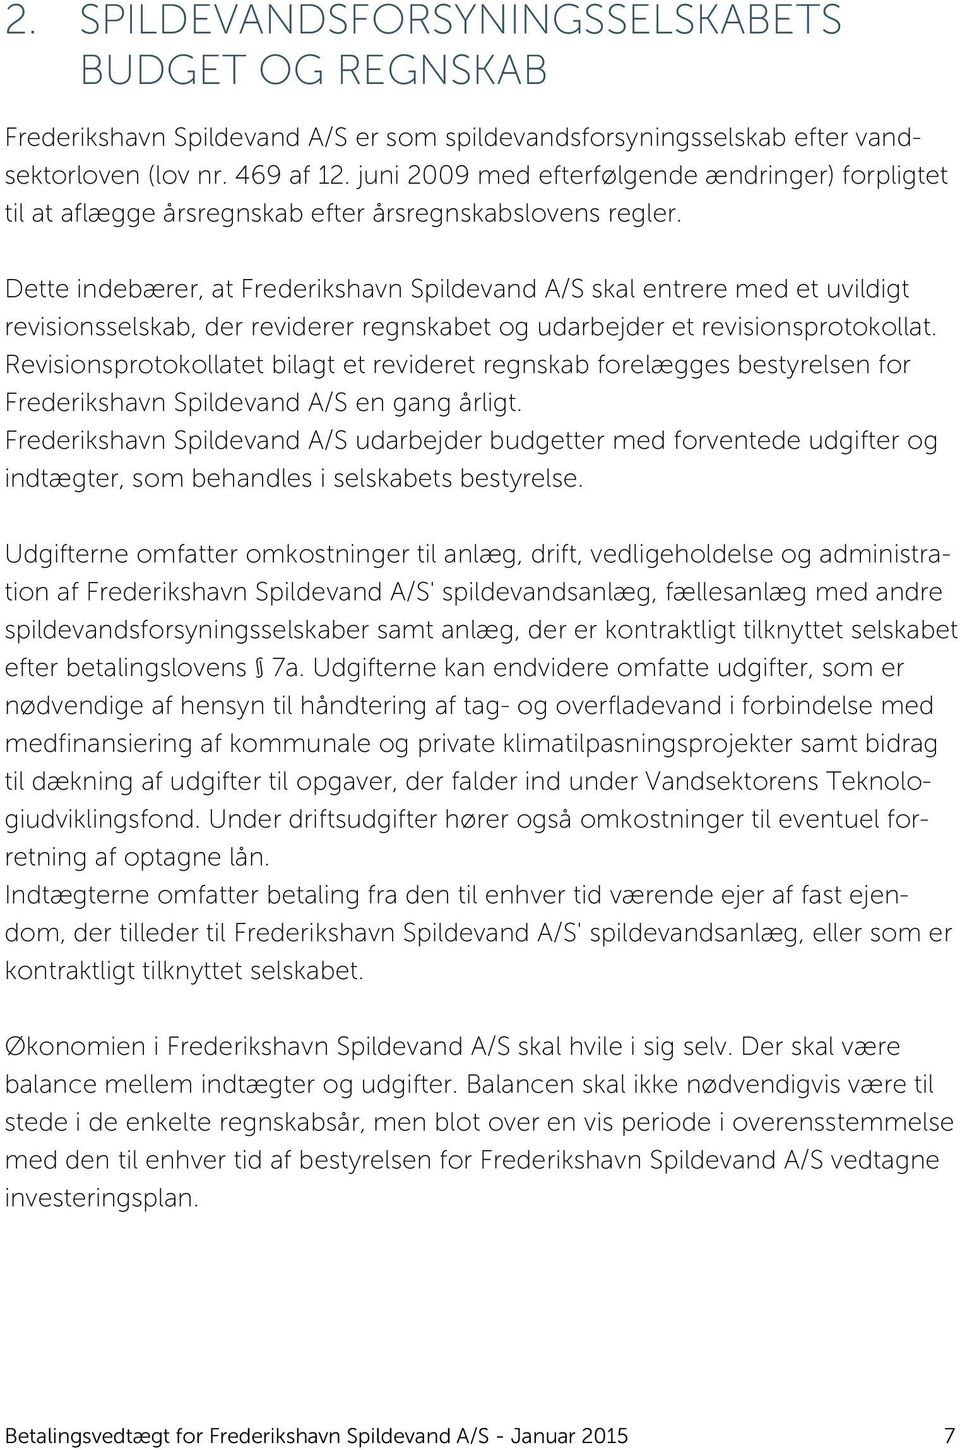 Dette indebærer, at Frederikshavn Spildevand A/S skal entrere med et uvildigt revisionsselskab, der reviderer regnskabet og udarbejder et revisionsprotokollat.